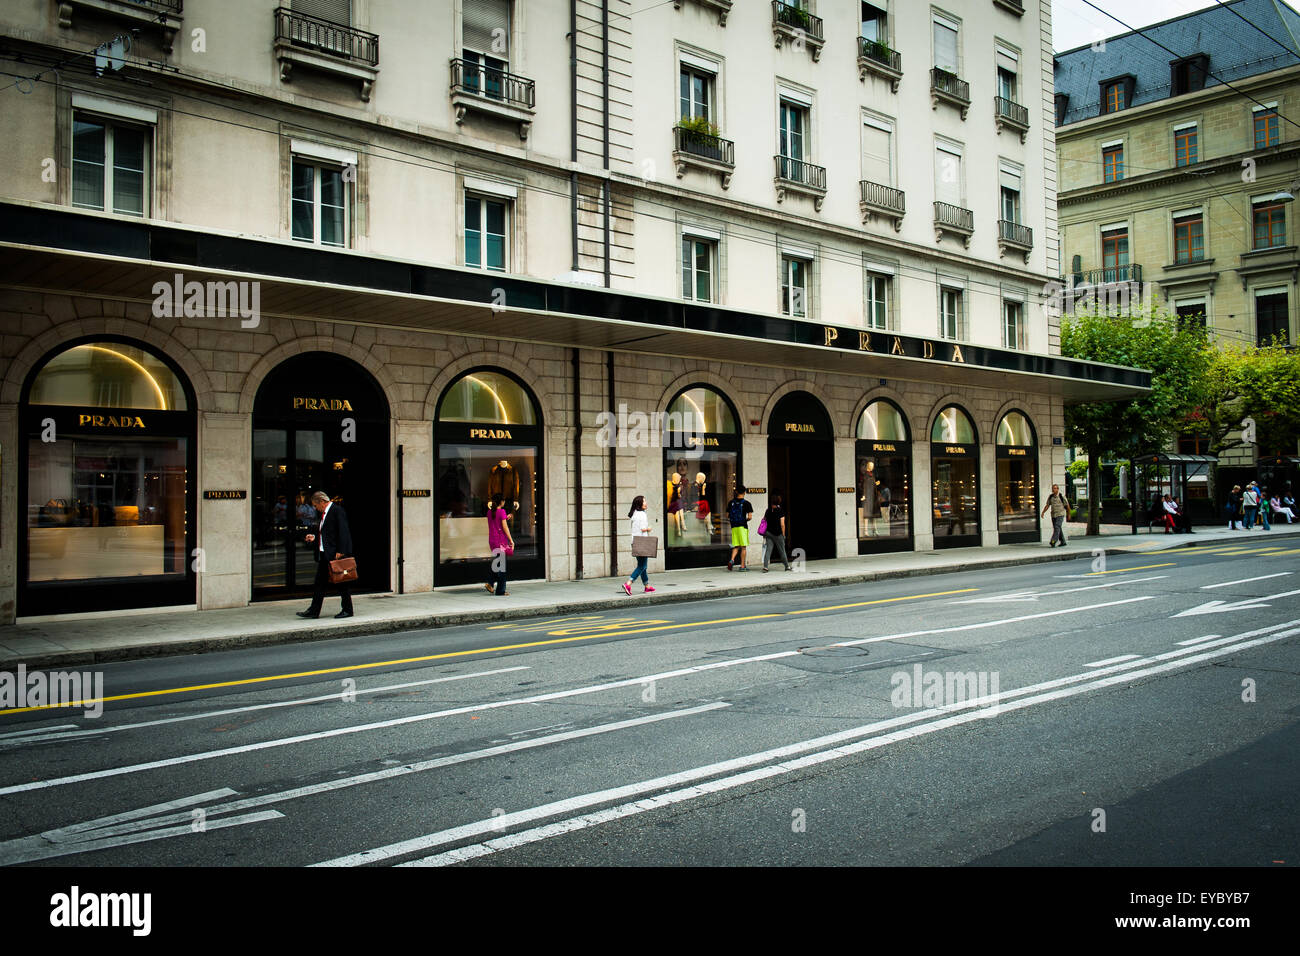 Prada store in geneva,Switzerland Stock Photo - Alamy